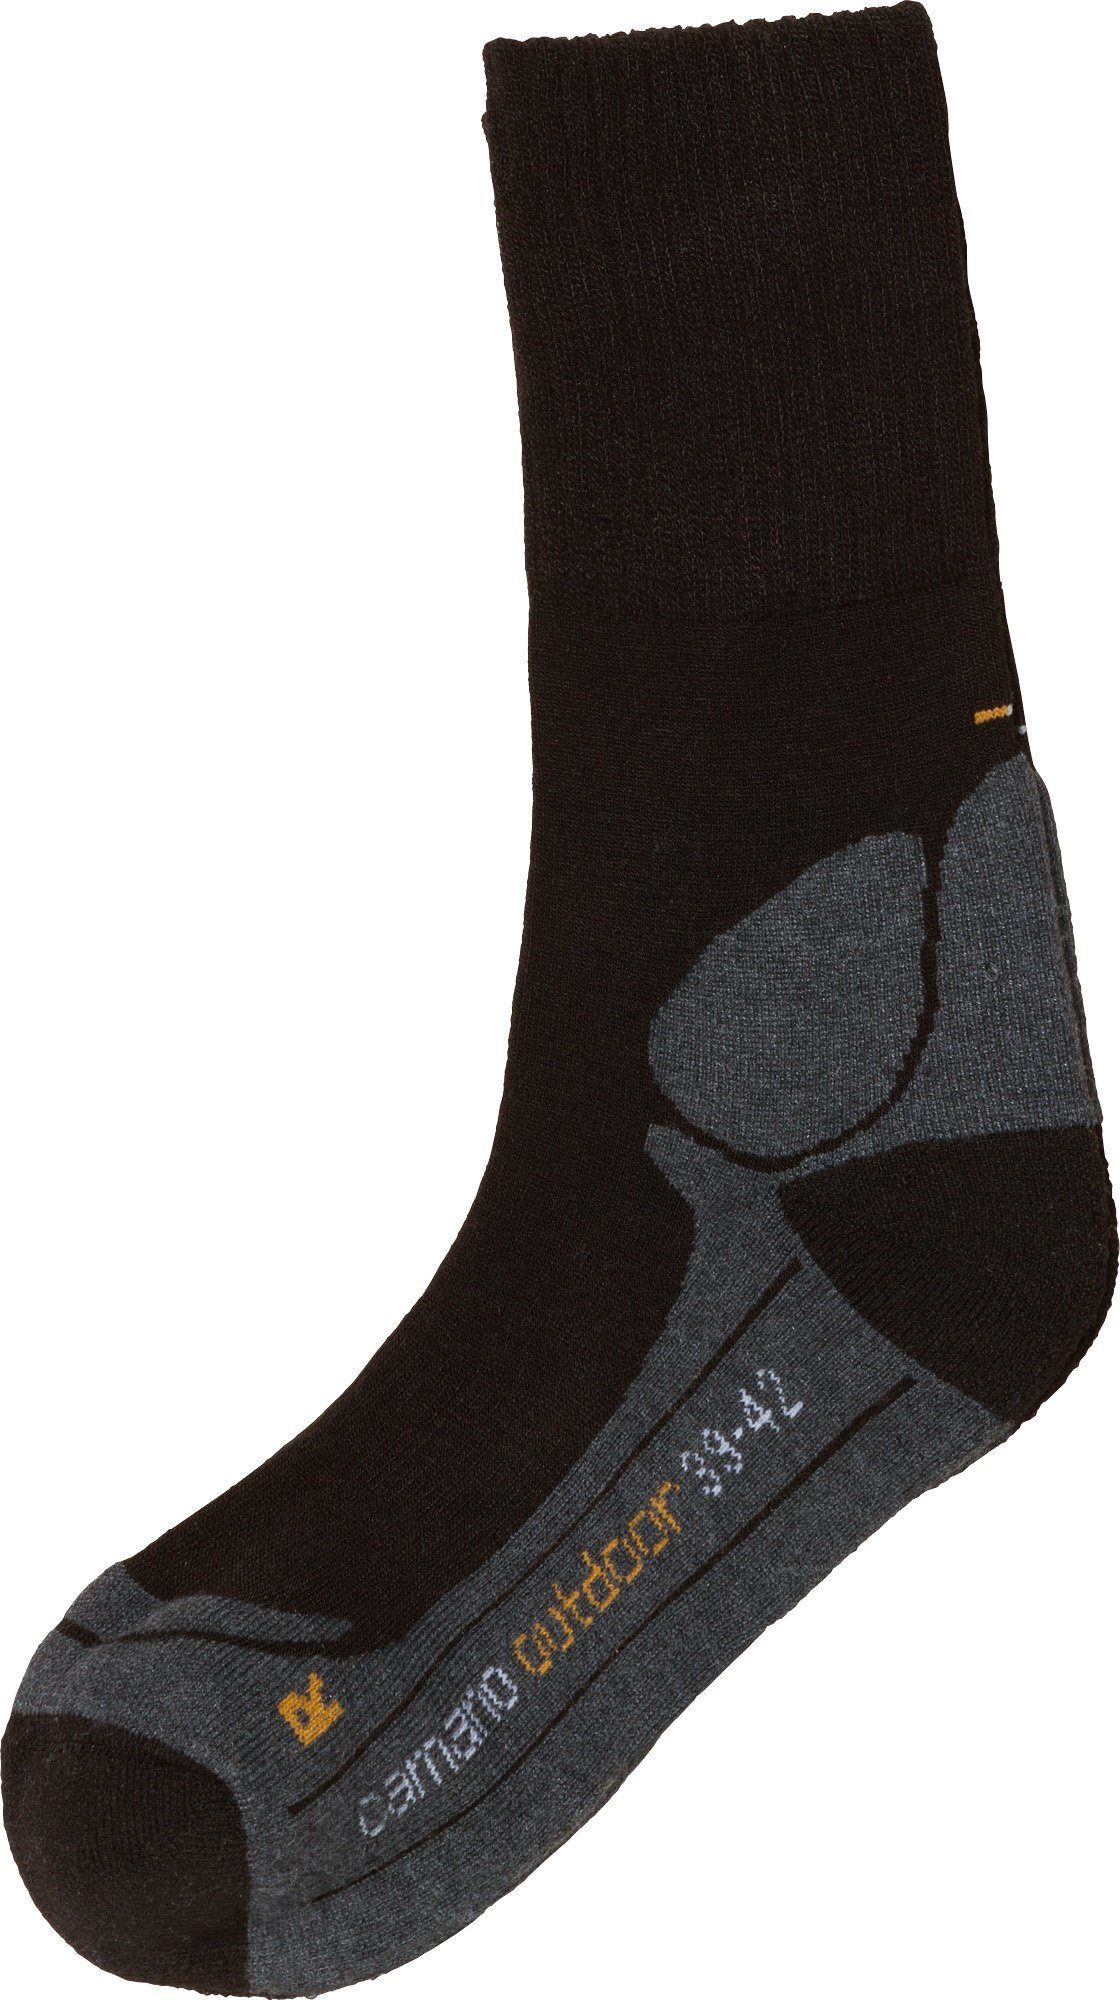 Camano Socken Unisex-Outdoor-Socken 1 Paar Uni schwarz